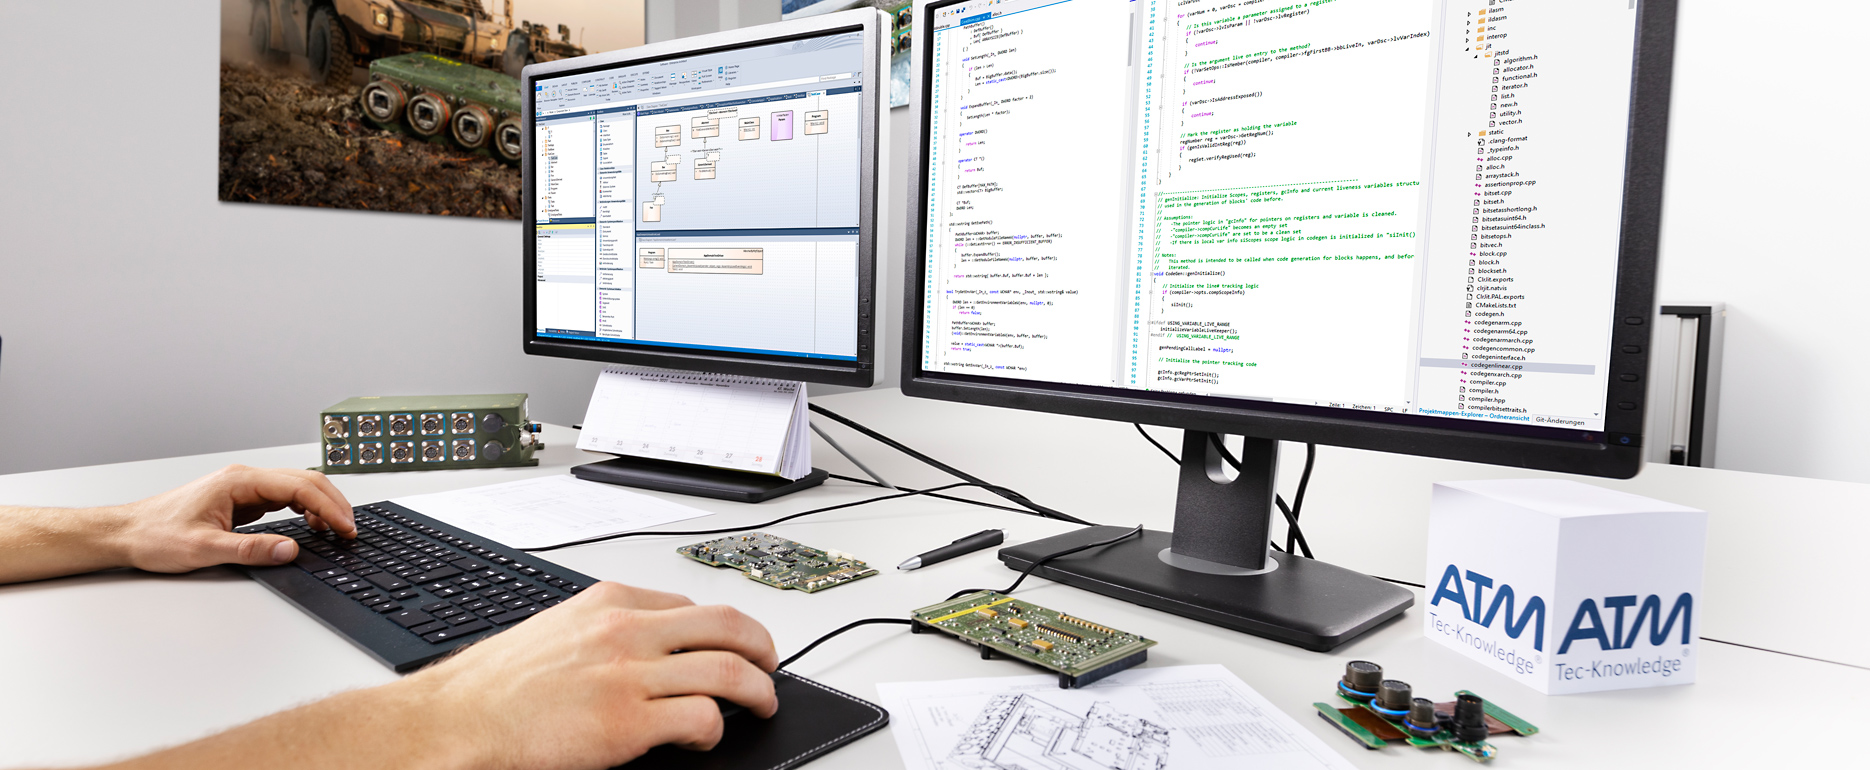 Ein Entwickler sitzt am Schreibtisch, die Hände auf der Tastatur, auf dem Bildschirm sind Programmcodezeilen zu sehen